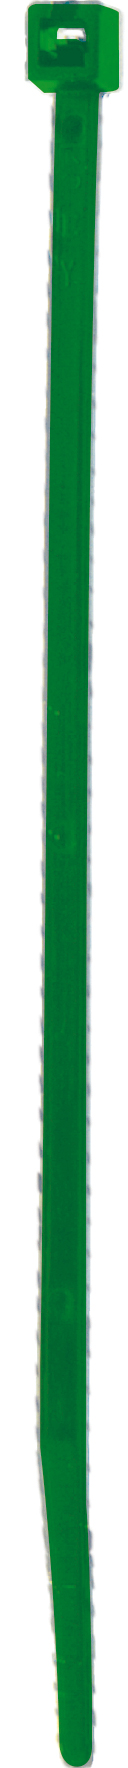 Cod. 36300Z361500C - FS Fascetta per cablaggio in nylon - Verde